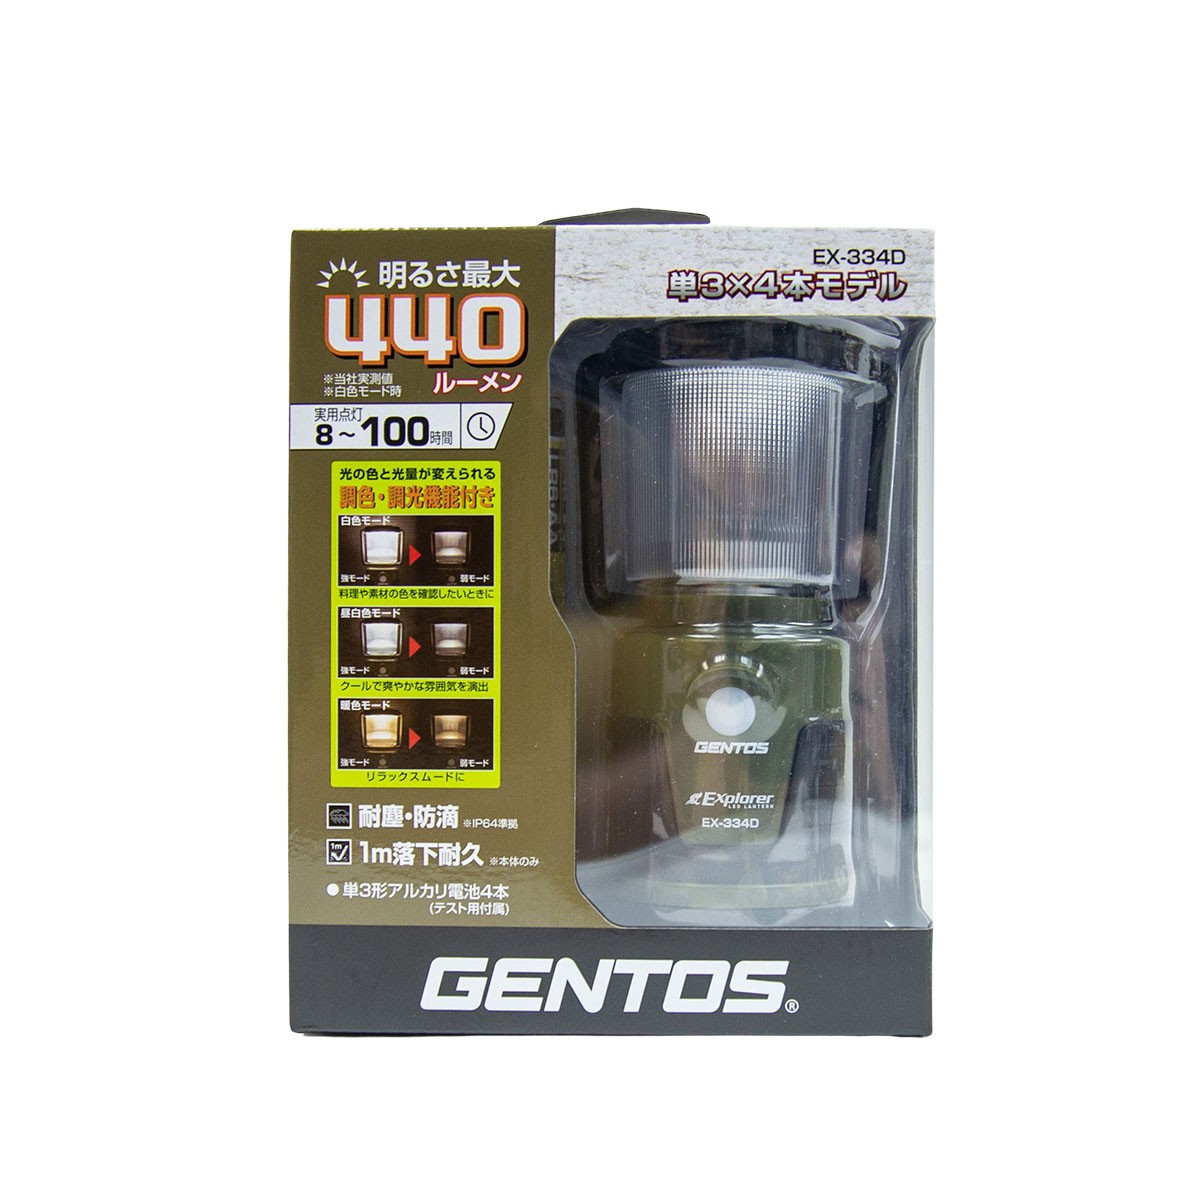 Gentos EX-334D Explorer LED 戶外用營燈 露營 燈具 耐應防滴(IP64) 1米耐跌 <荃灣店>